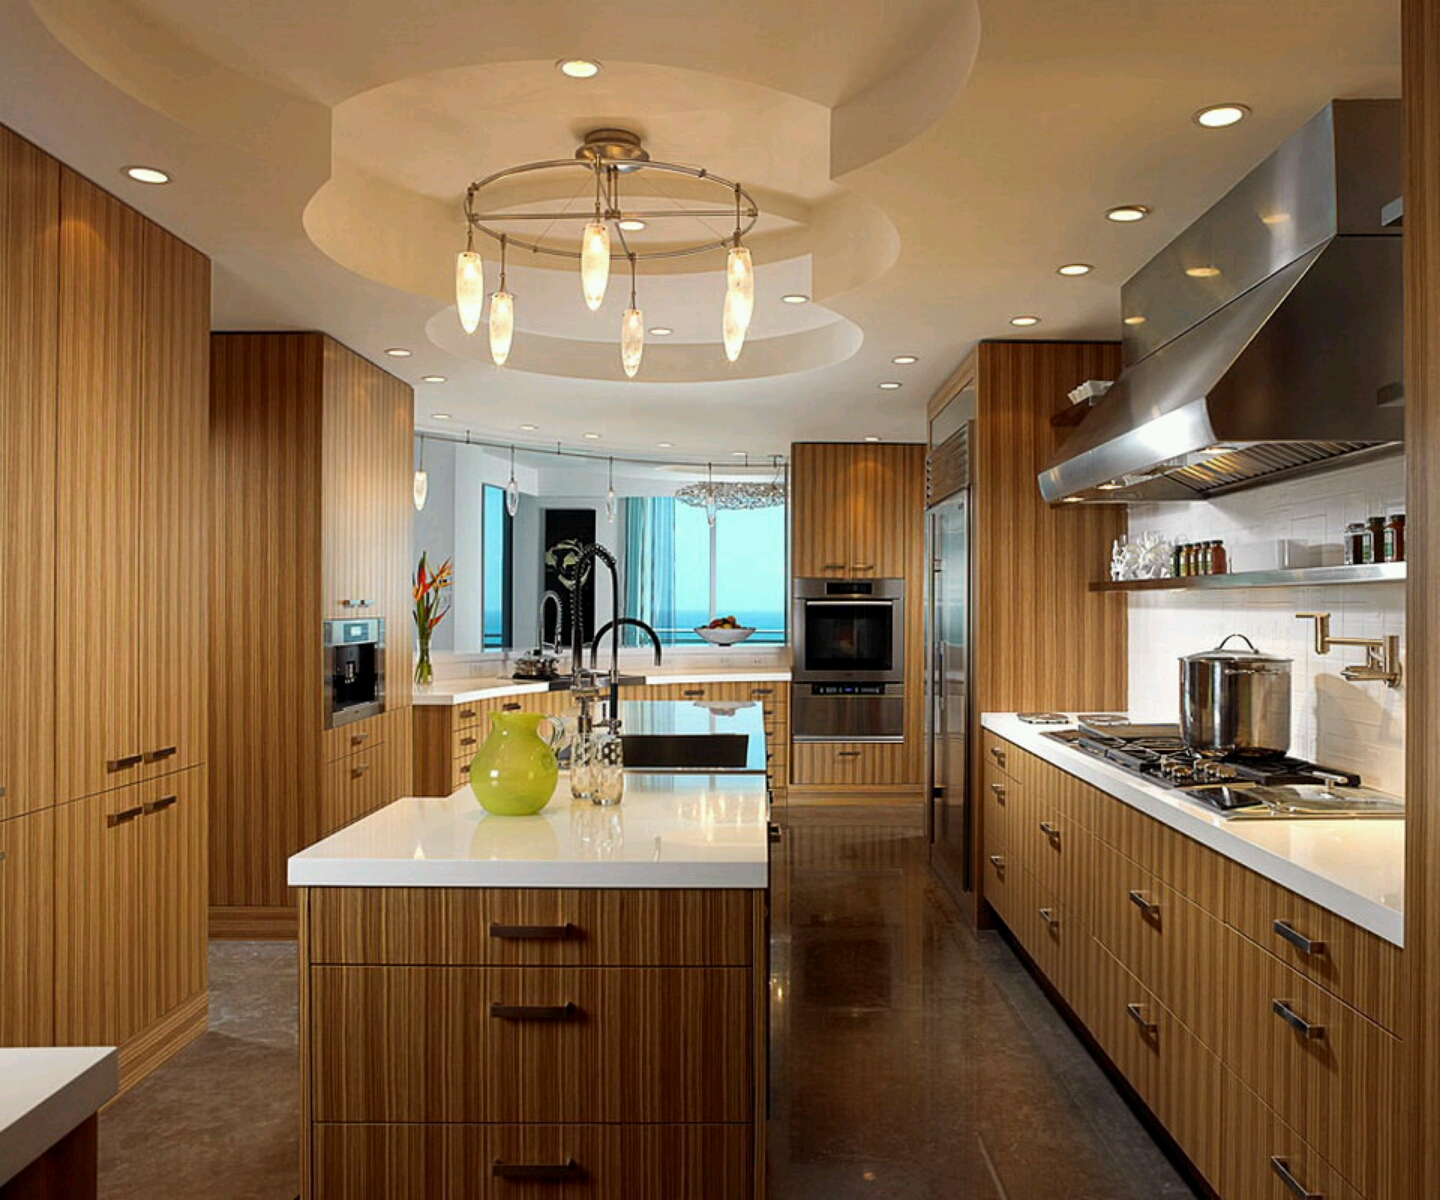 Modern wooden kitchen cabinets designs. | Interior Design